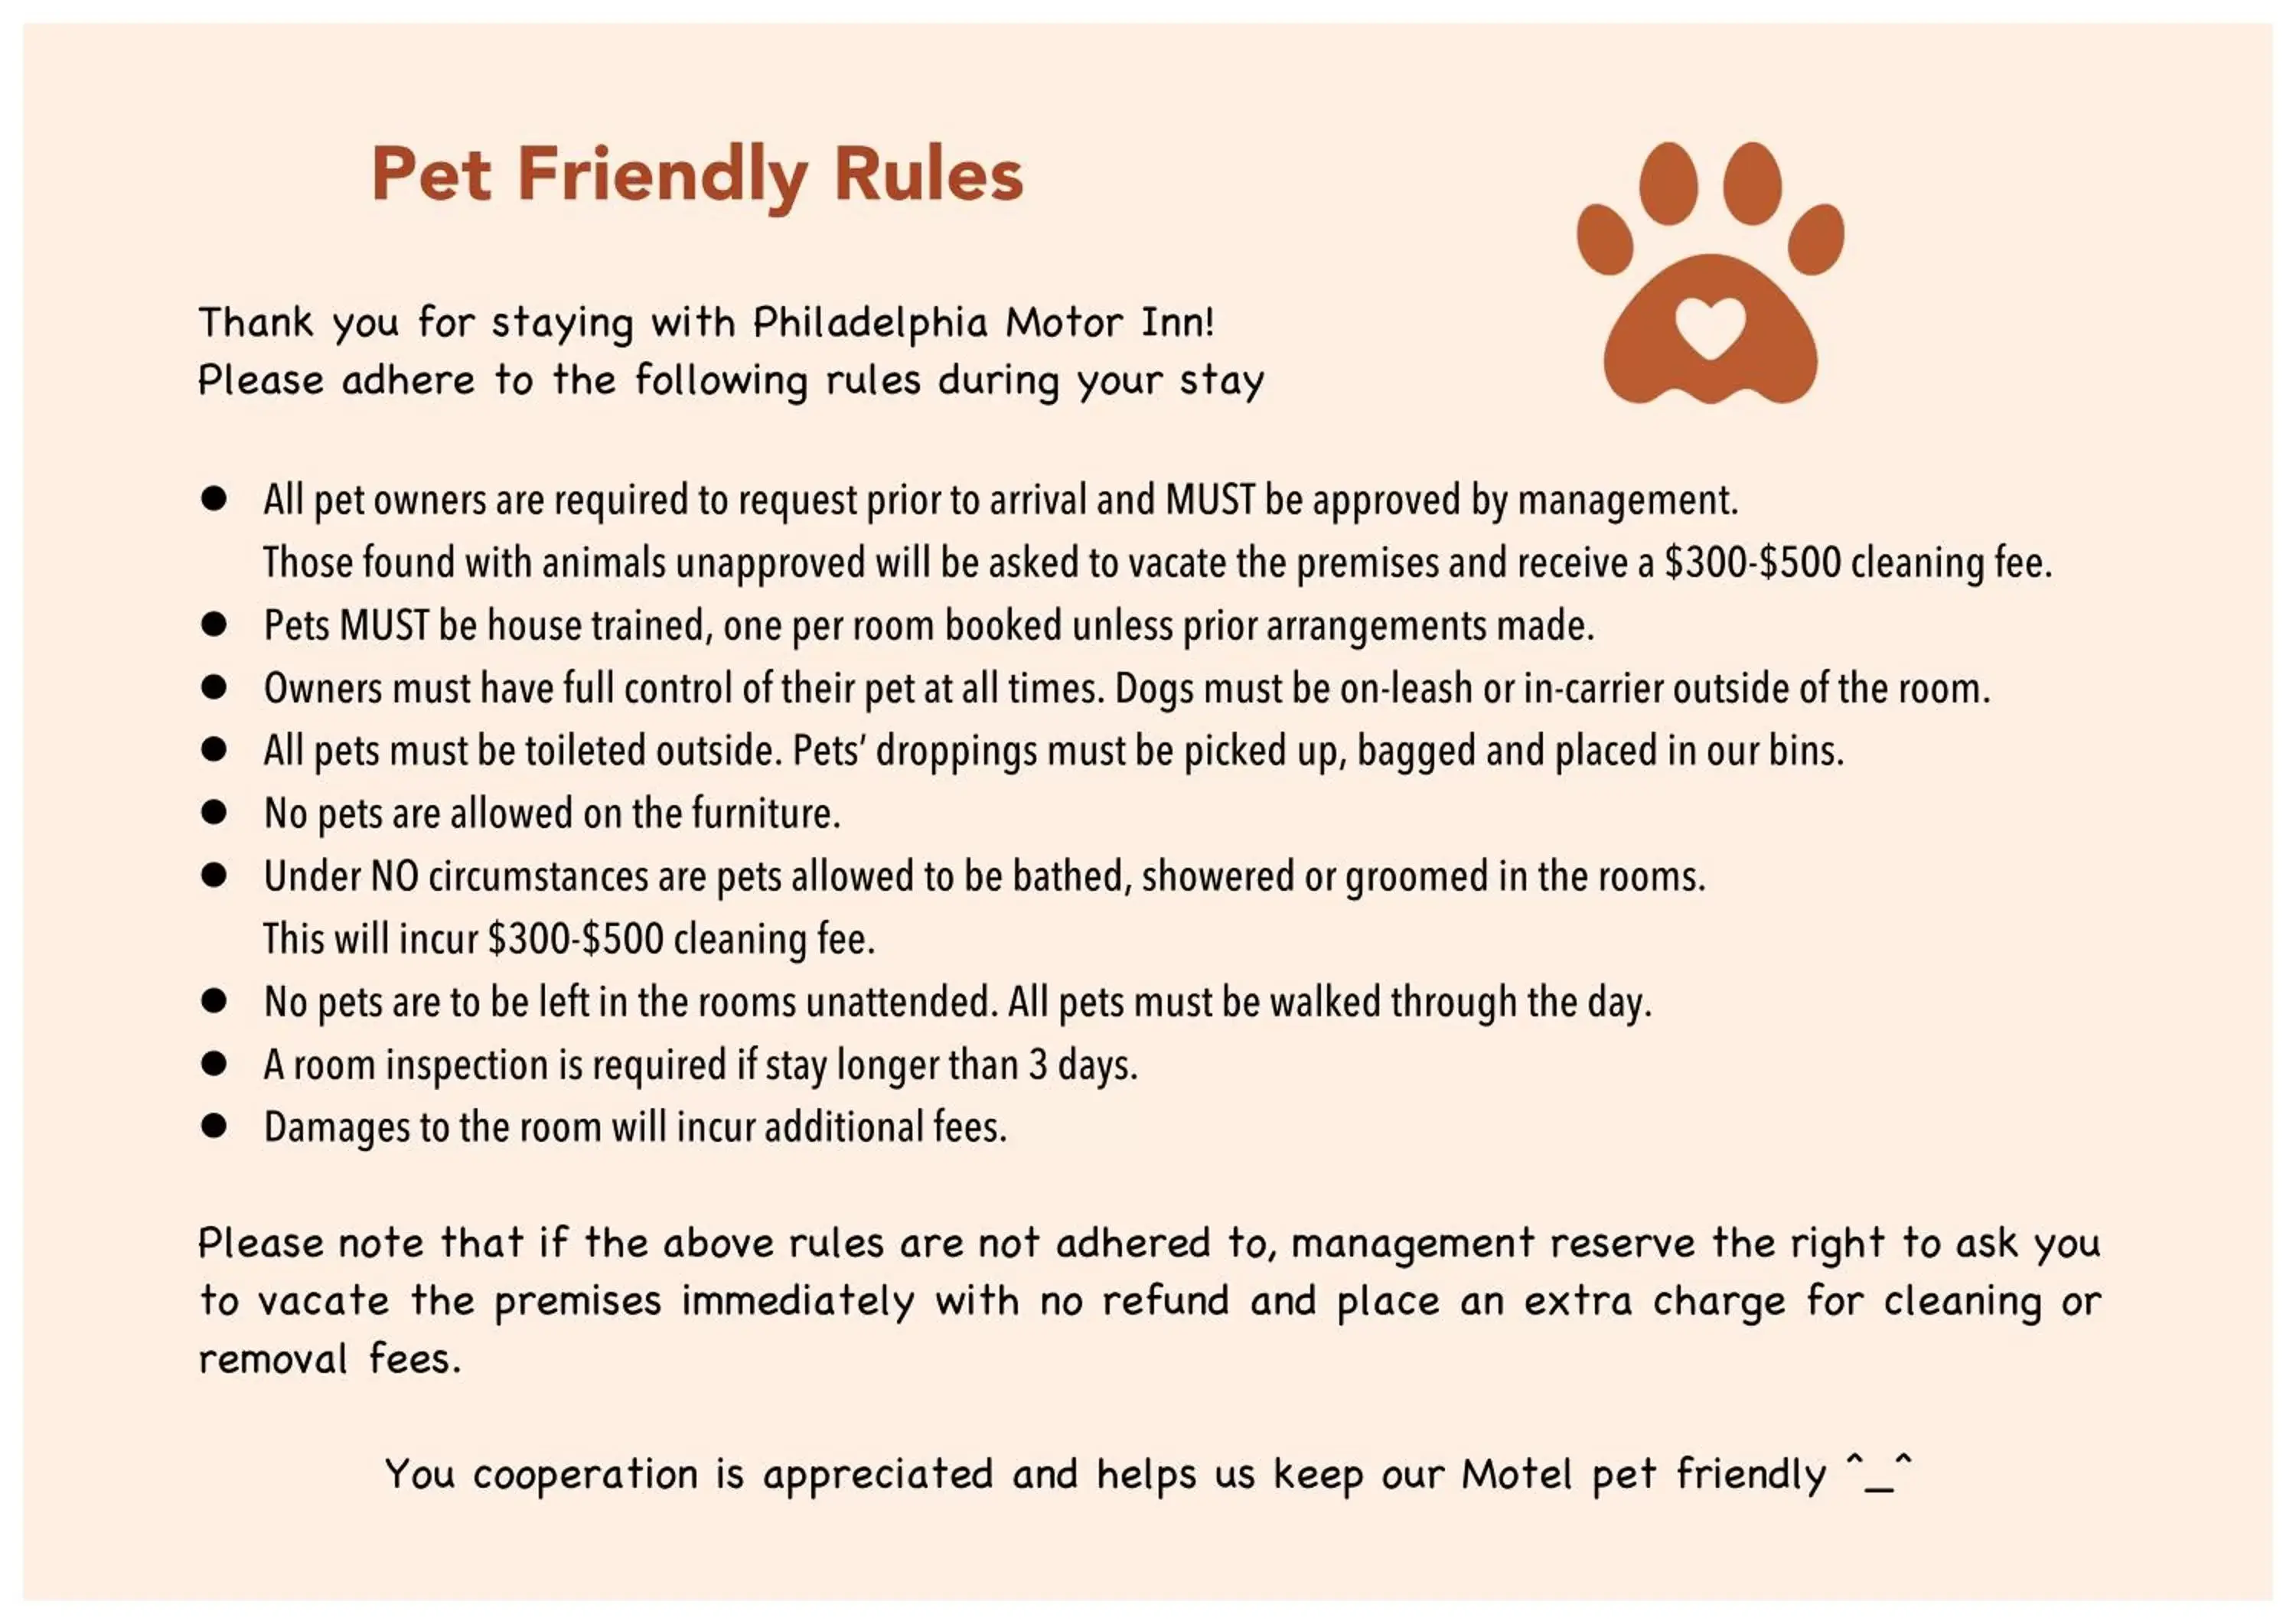 Pets in Philadelphia Motor Inn